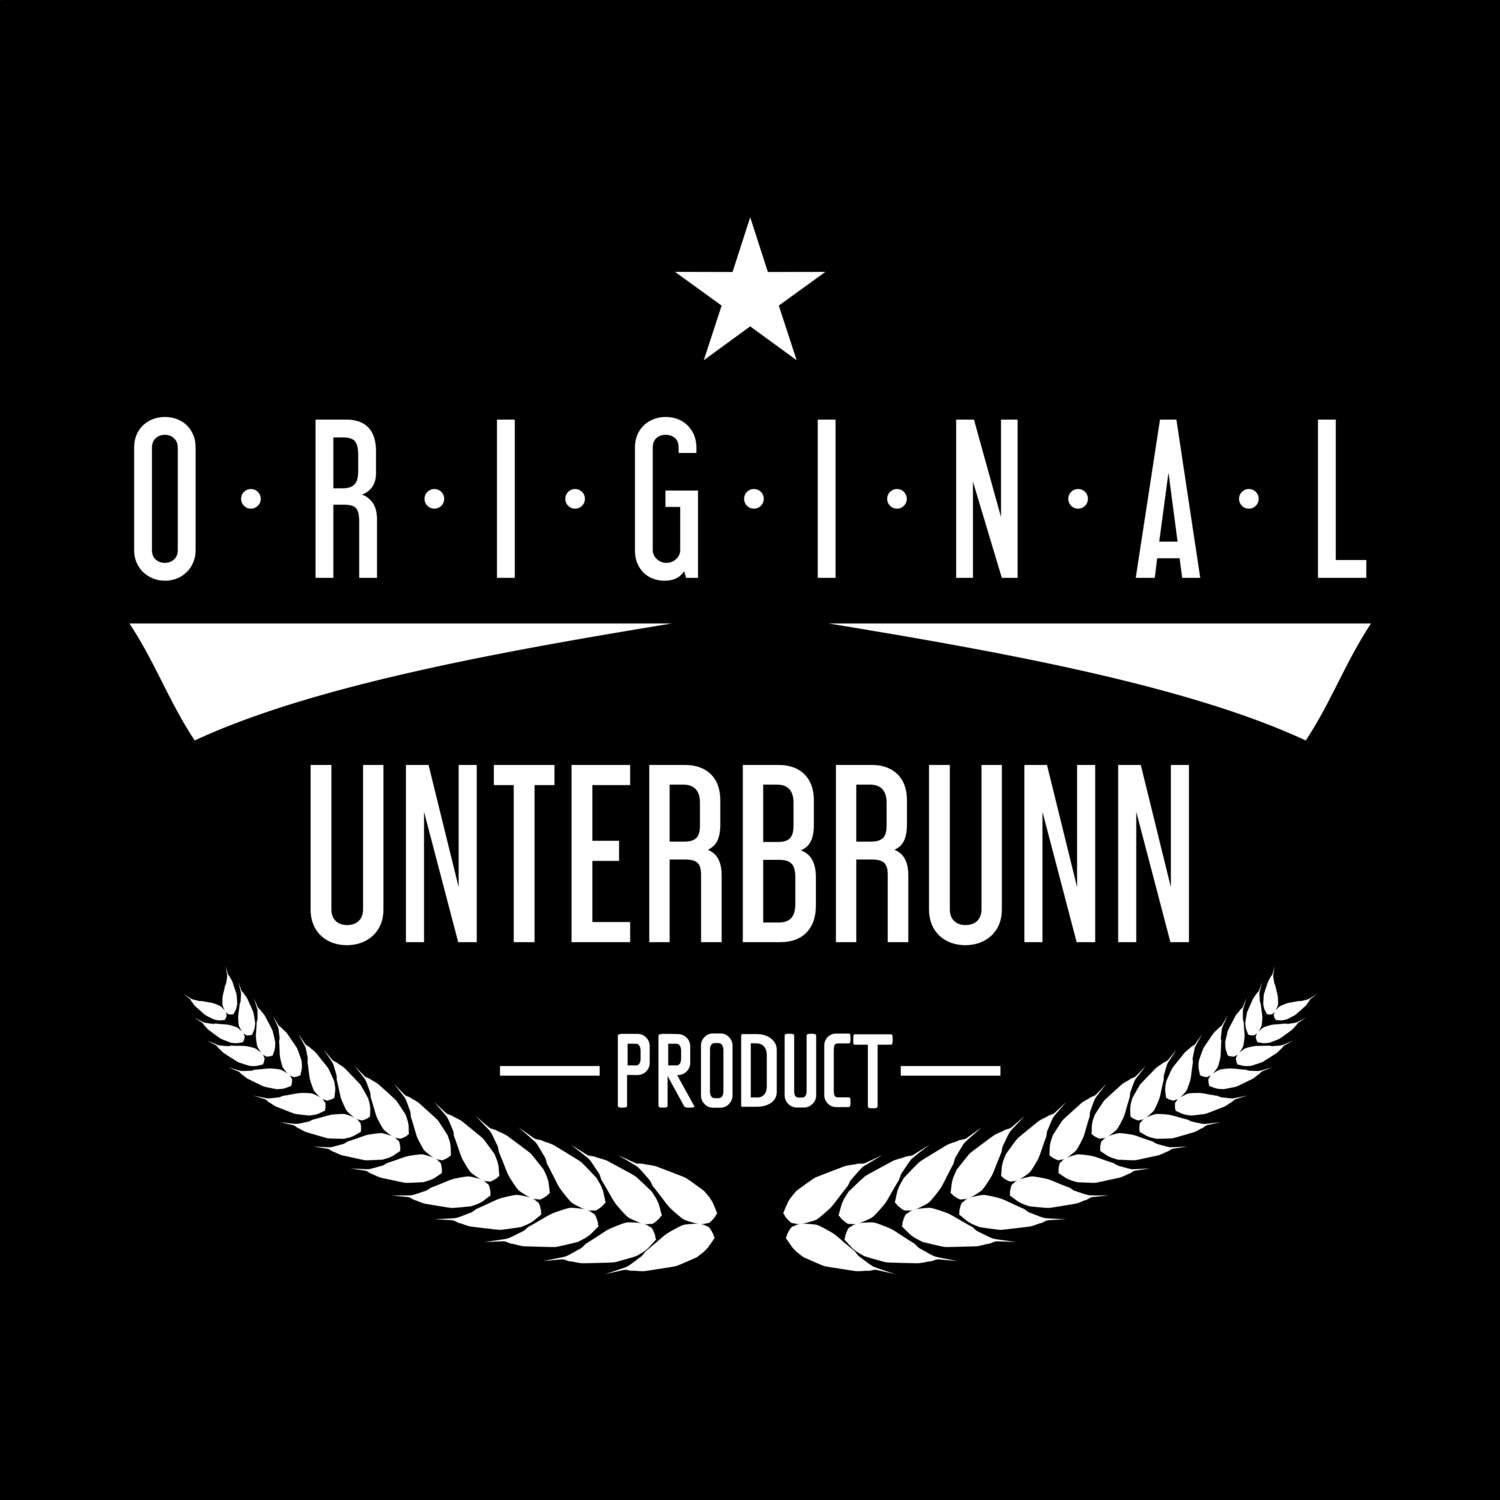 Unterbrunn T-Shirt »Original Product«